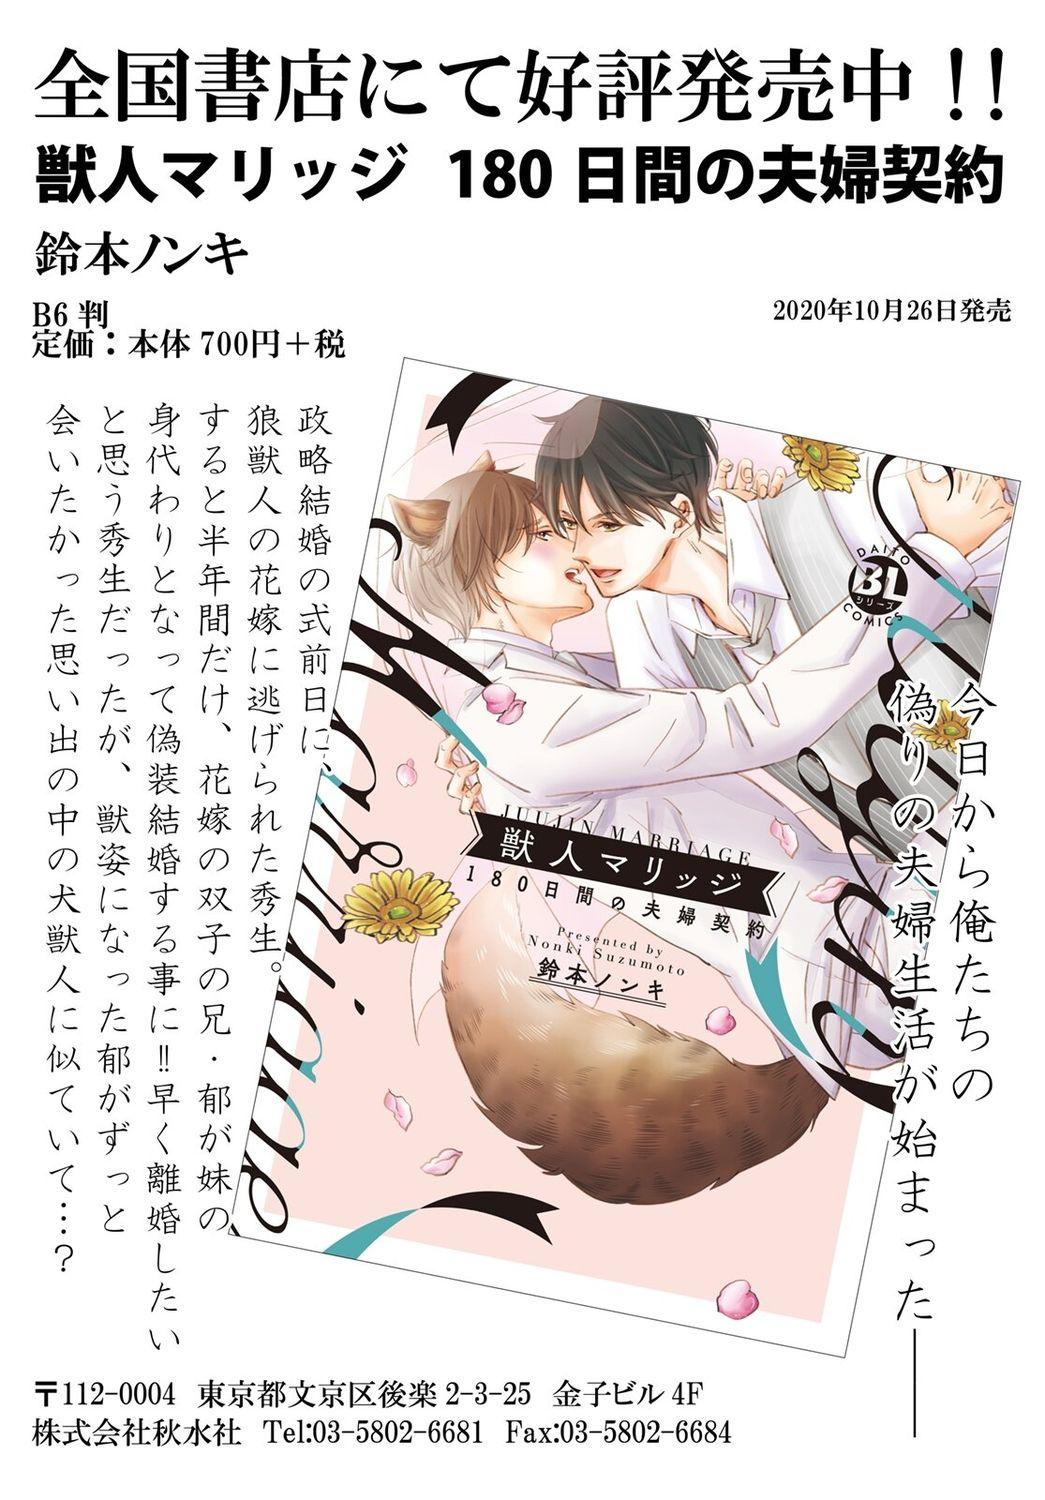 Ani o Yome ni Metorimasu ～ Kondo wa Tebanasanai ～ R18 Edition Vol. 1-4 32